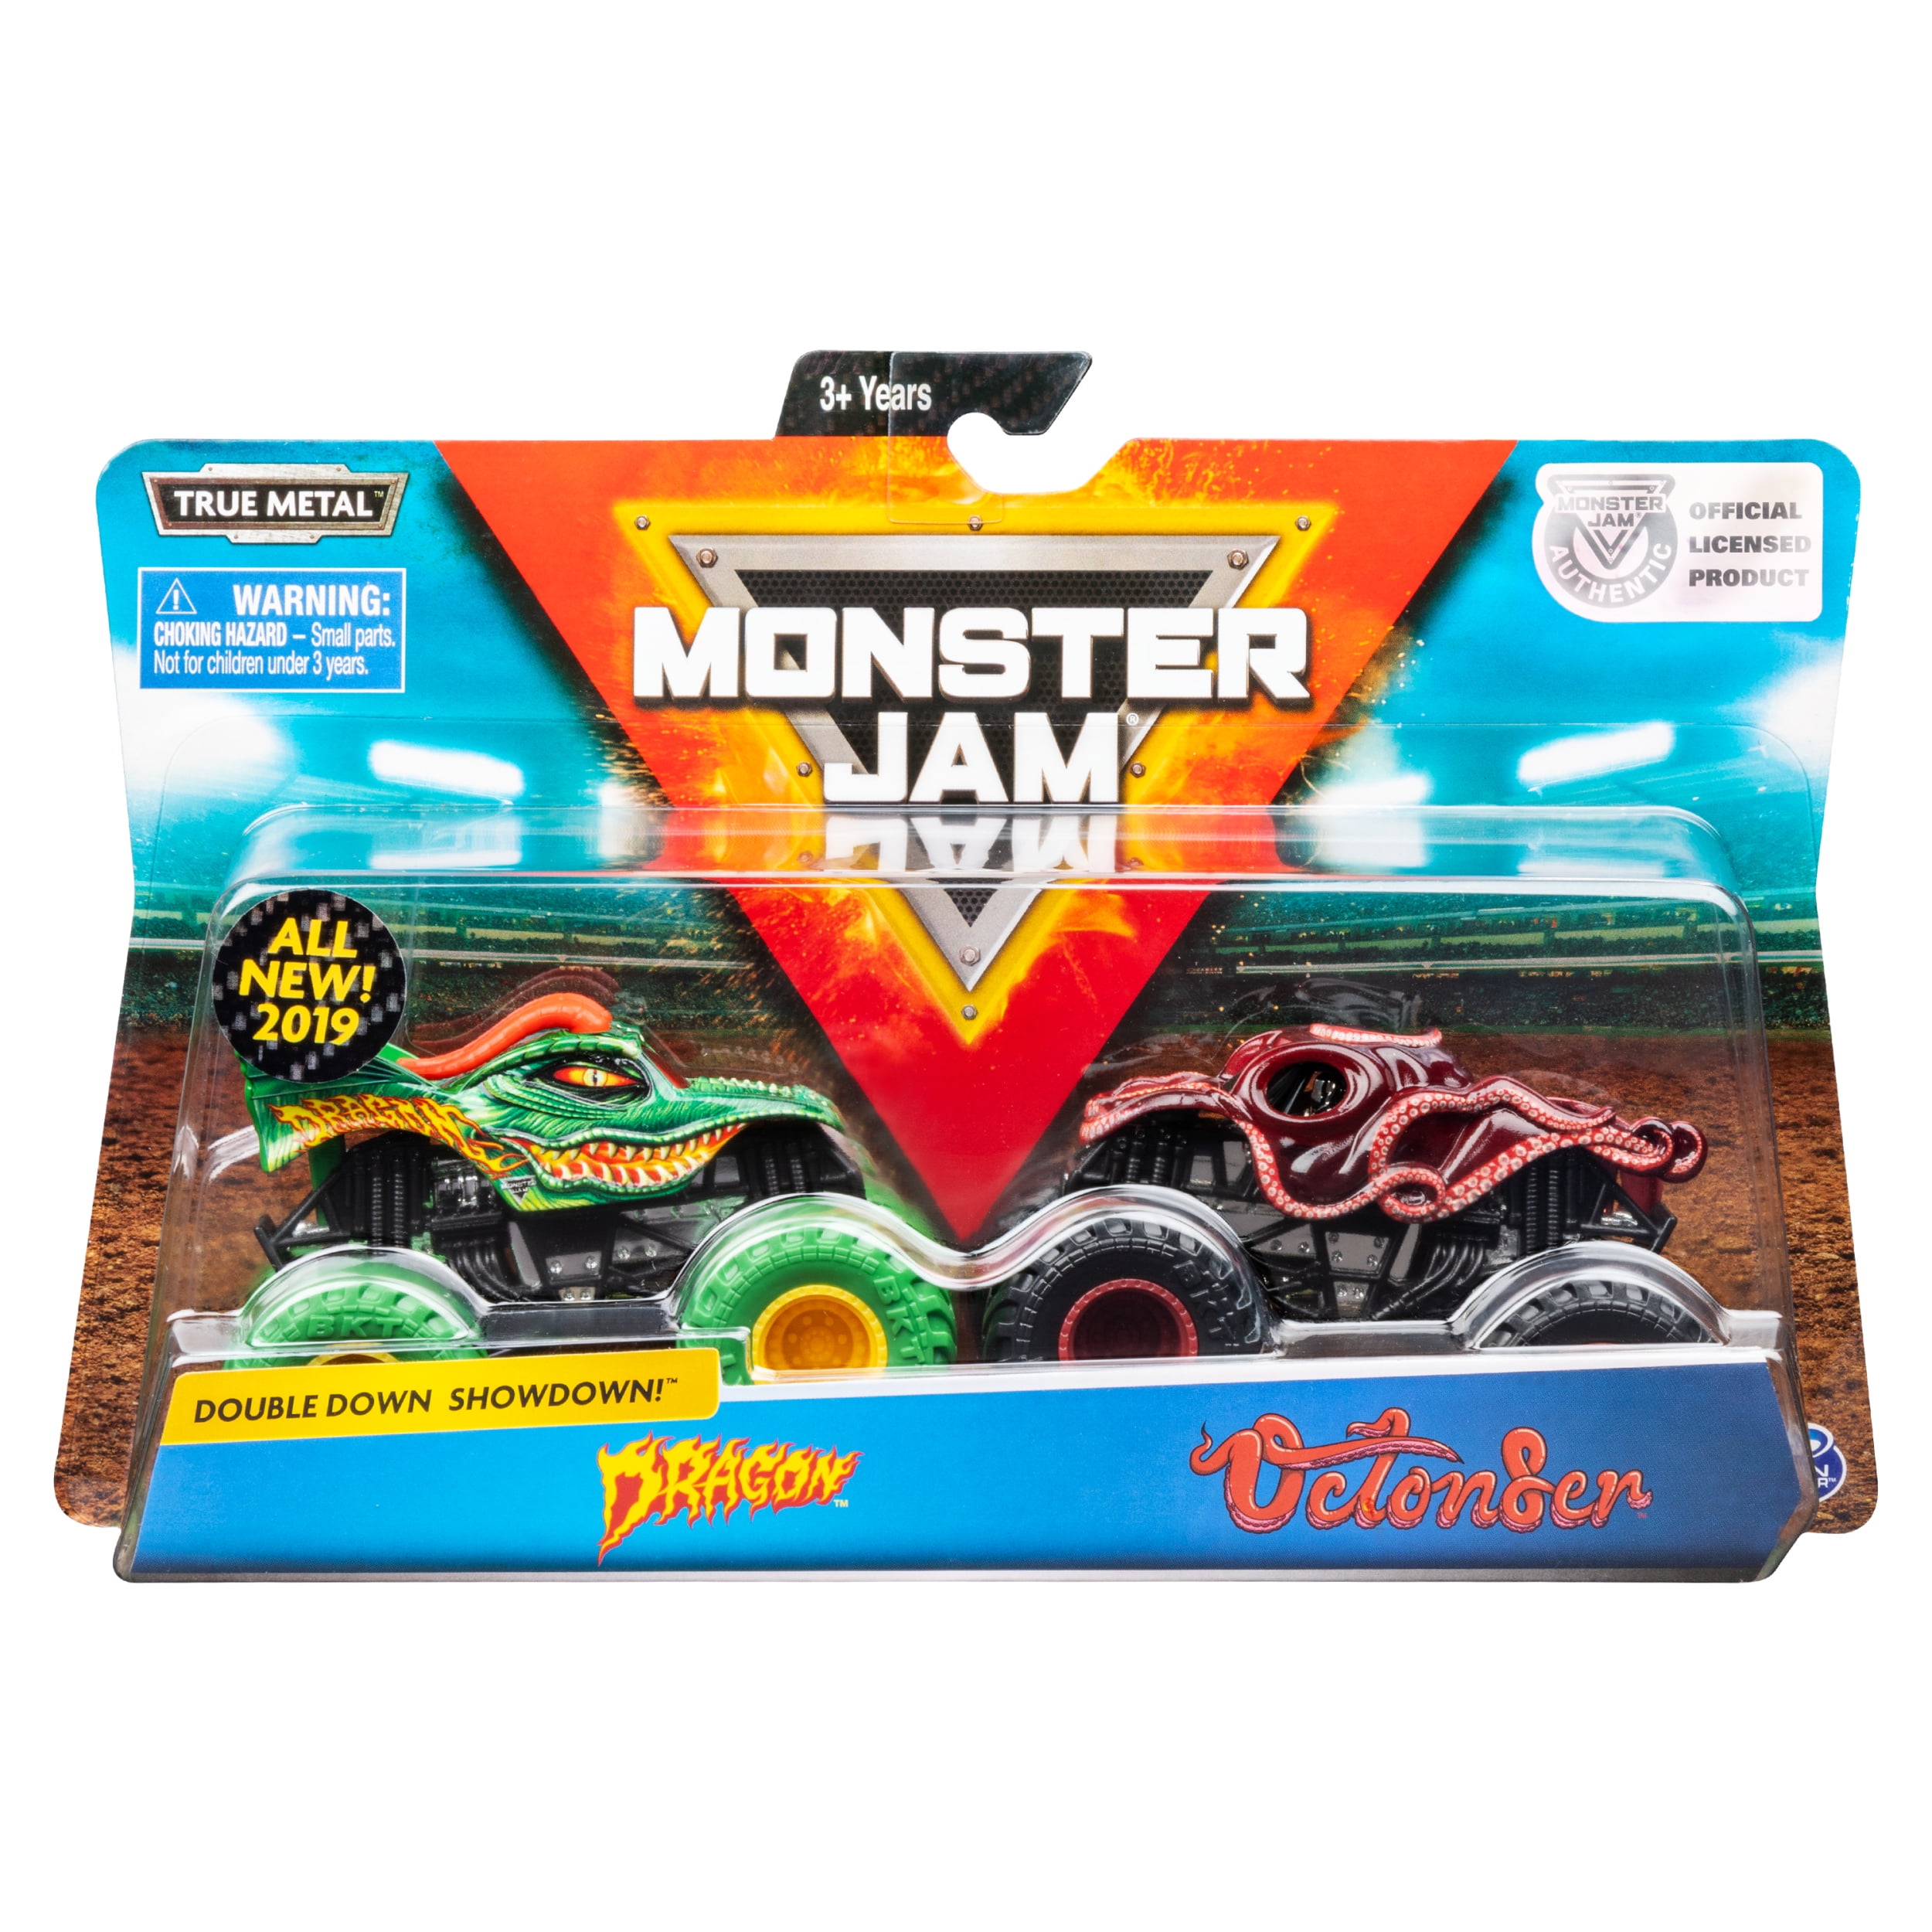 Monster Jam Official Dragon Vs. Octon8er Die Cast Monster Trucks 1:64  Scale, 2 Pack Vehicle Playset